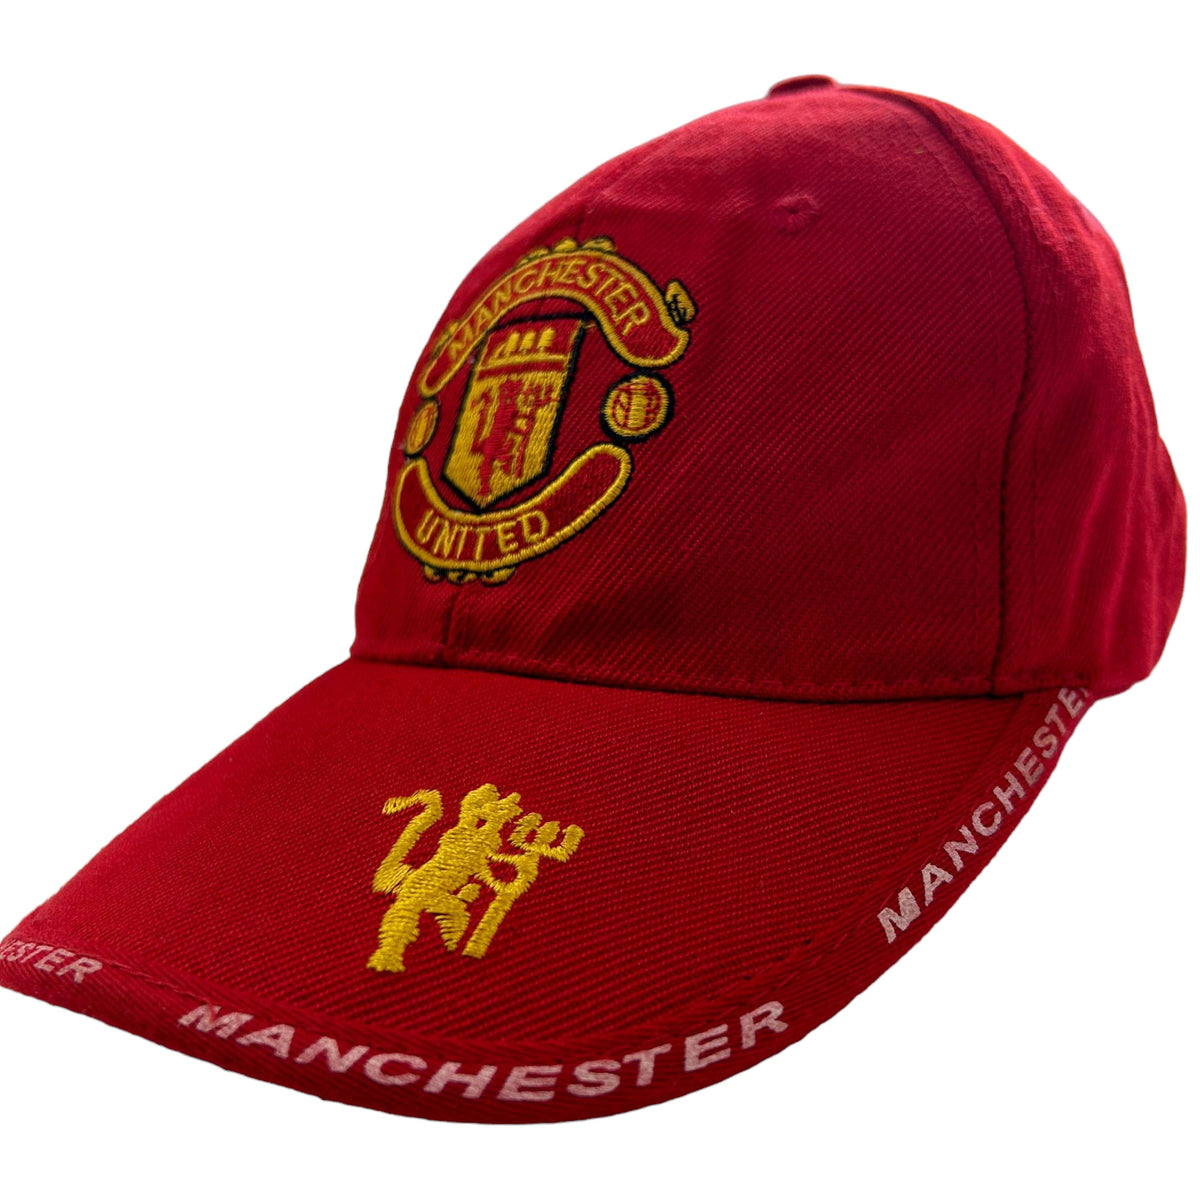 Vintage Manchester United Hat